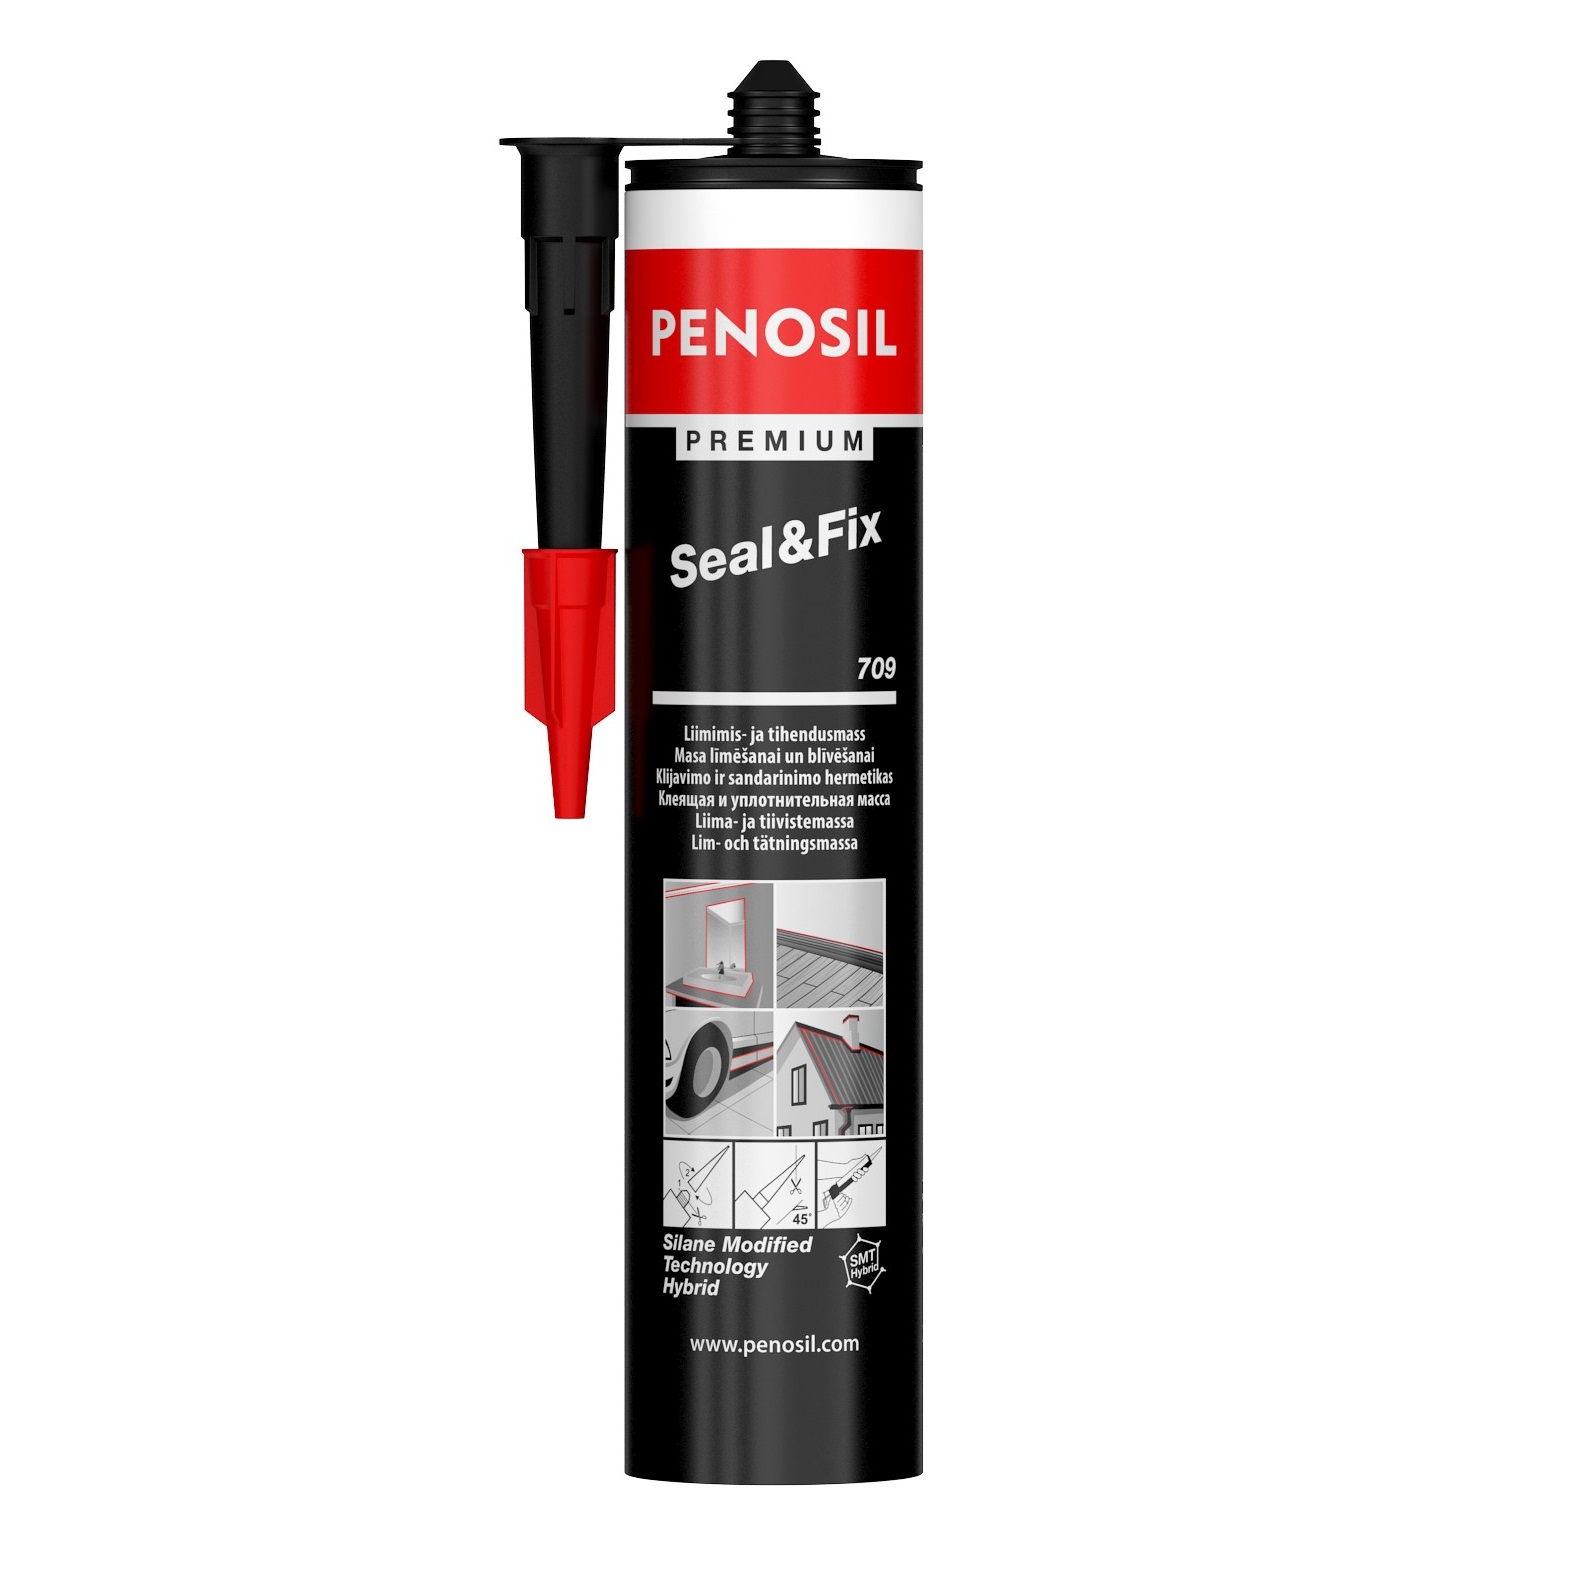 PENOSIL Premium Seal&Fix 709 -   